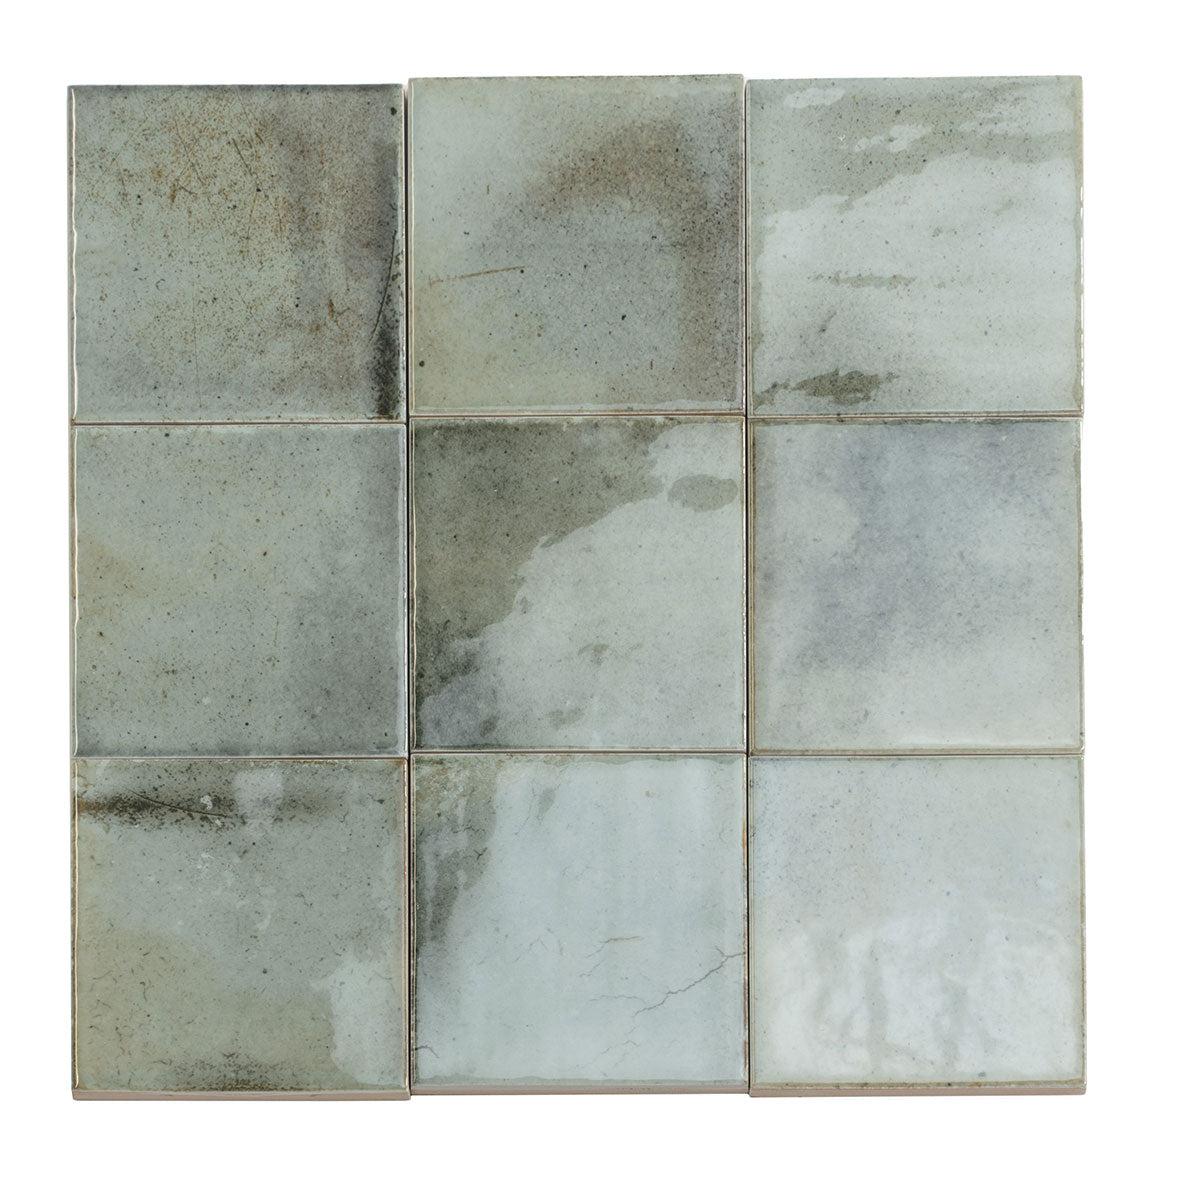 Luna Celadon 4x4 Ceramic Square Tiles